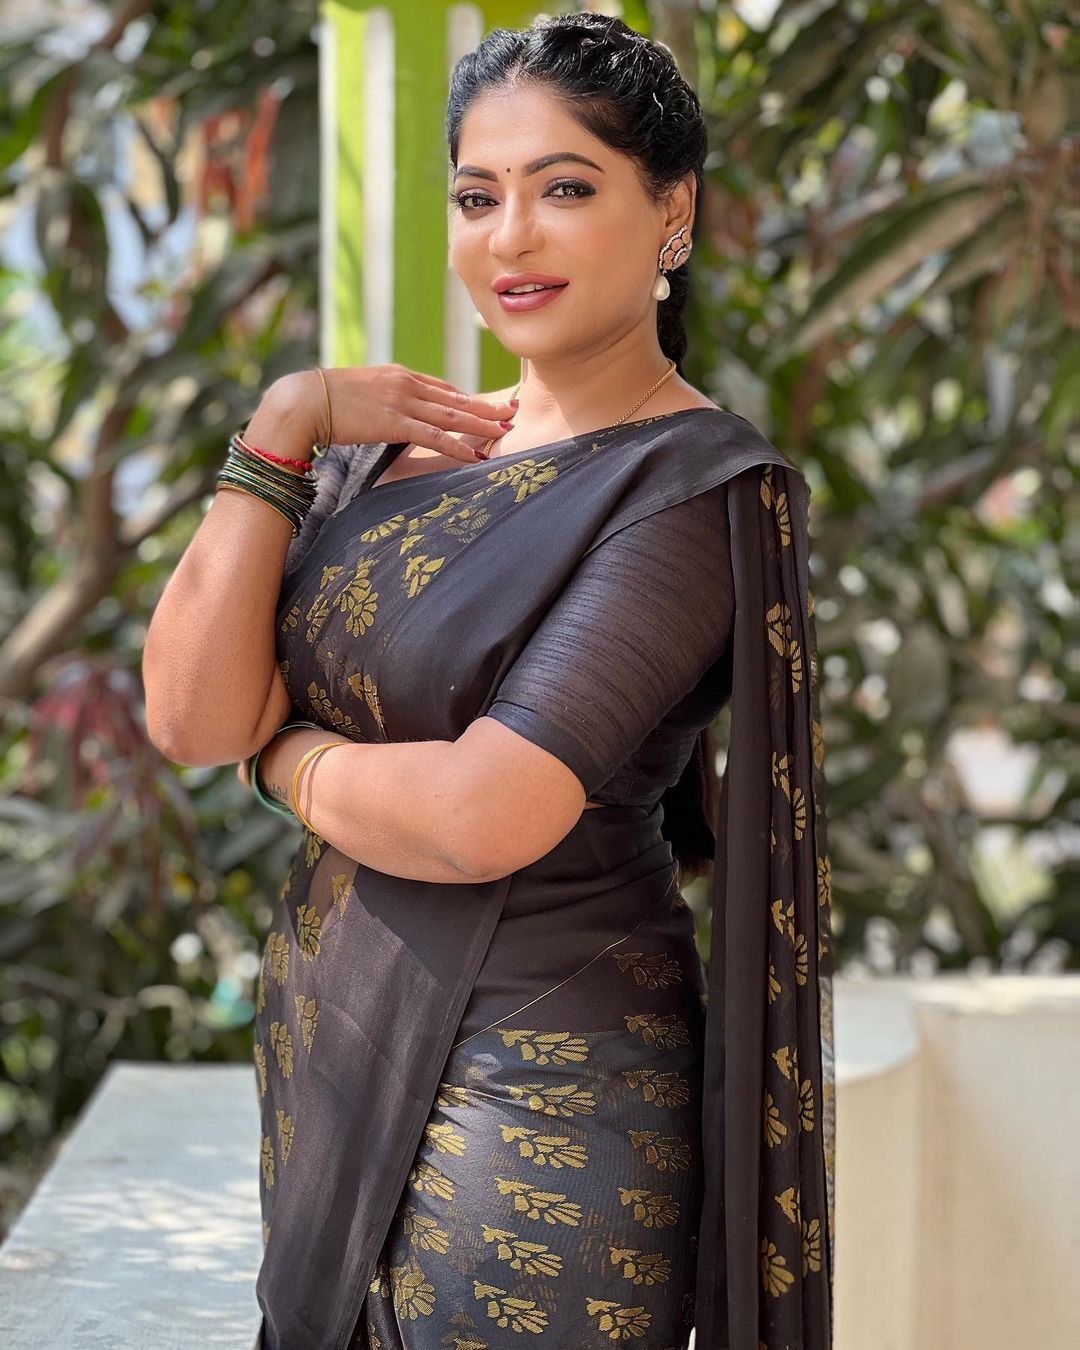 Reshma pasupuleti hot traditional saree wear photos